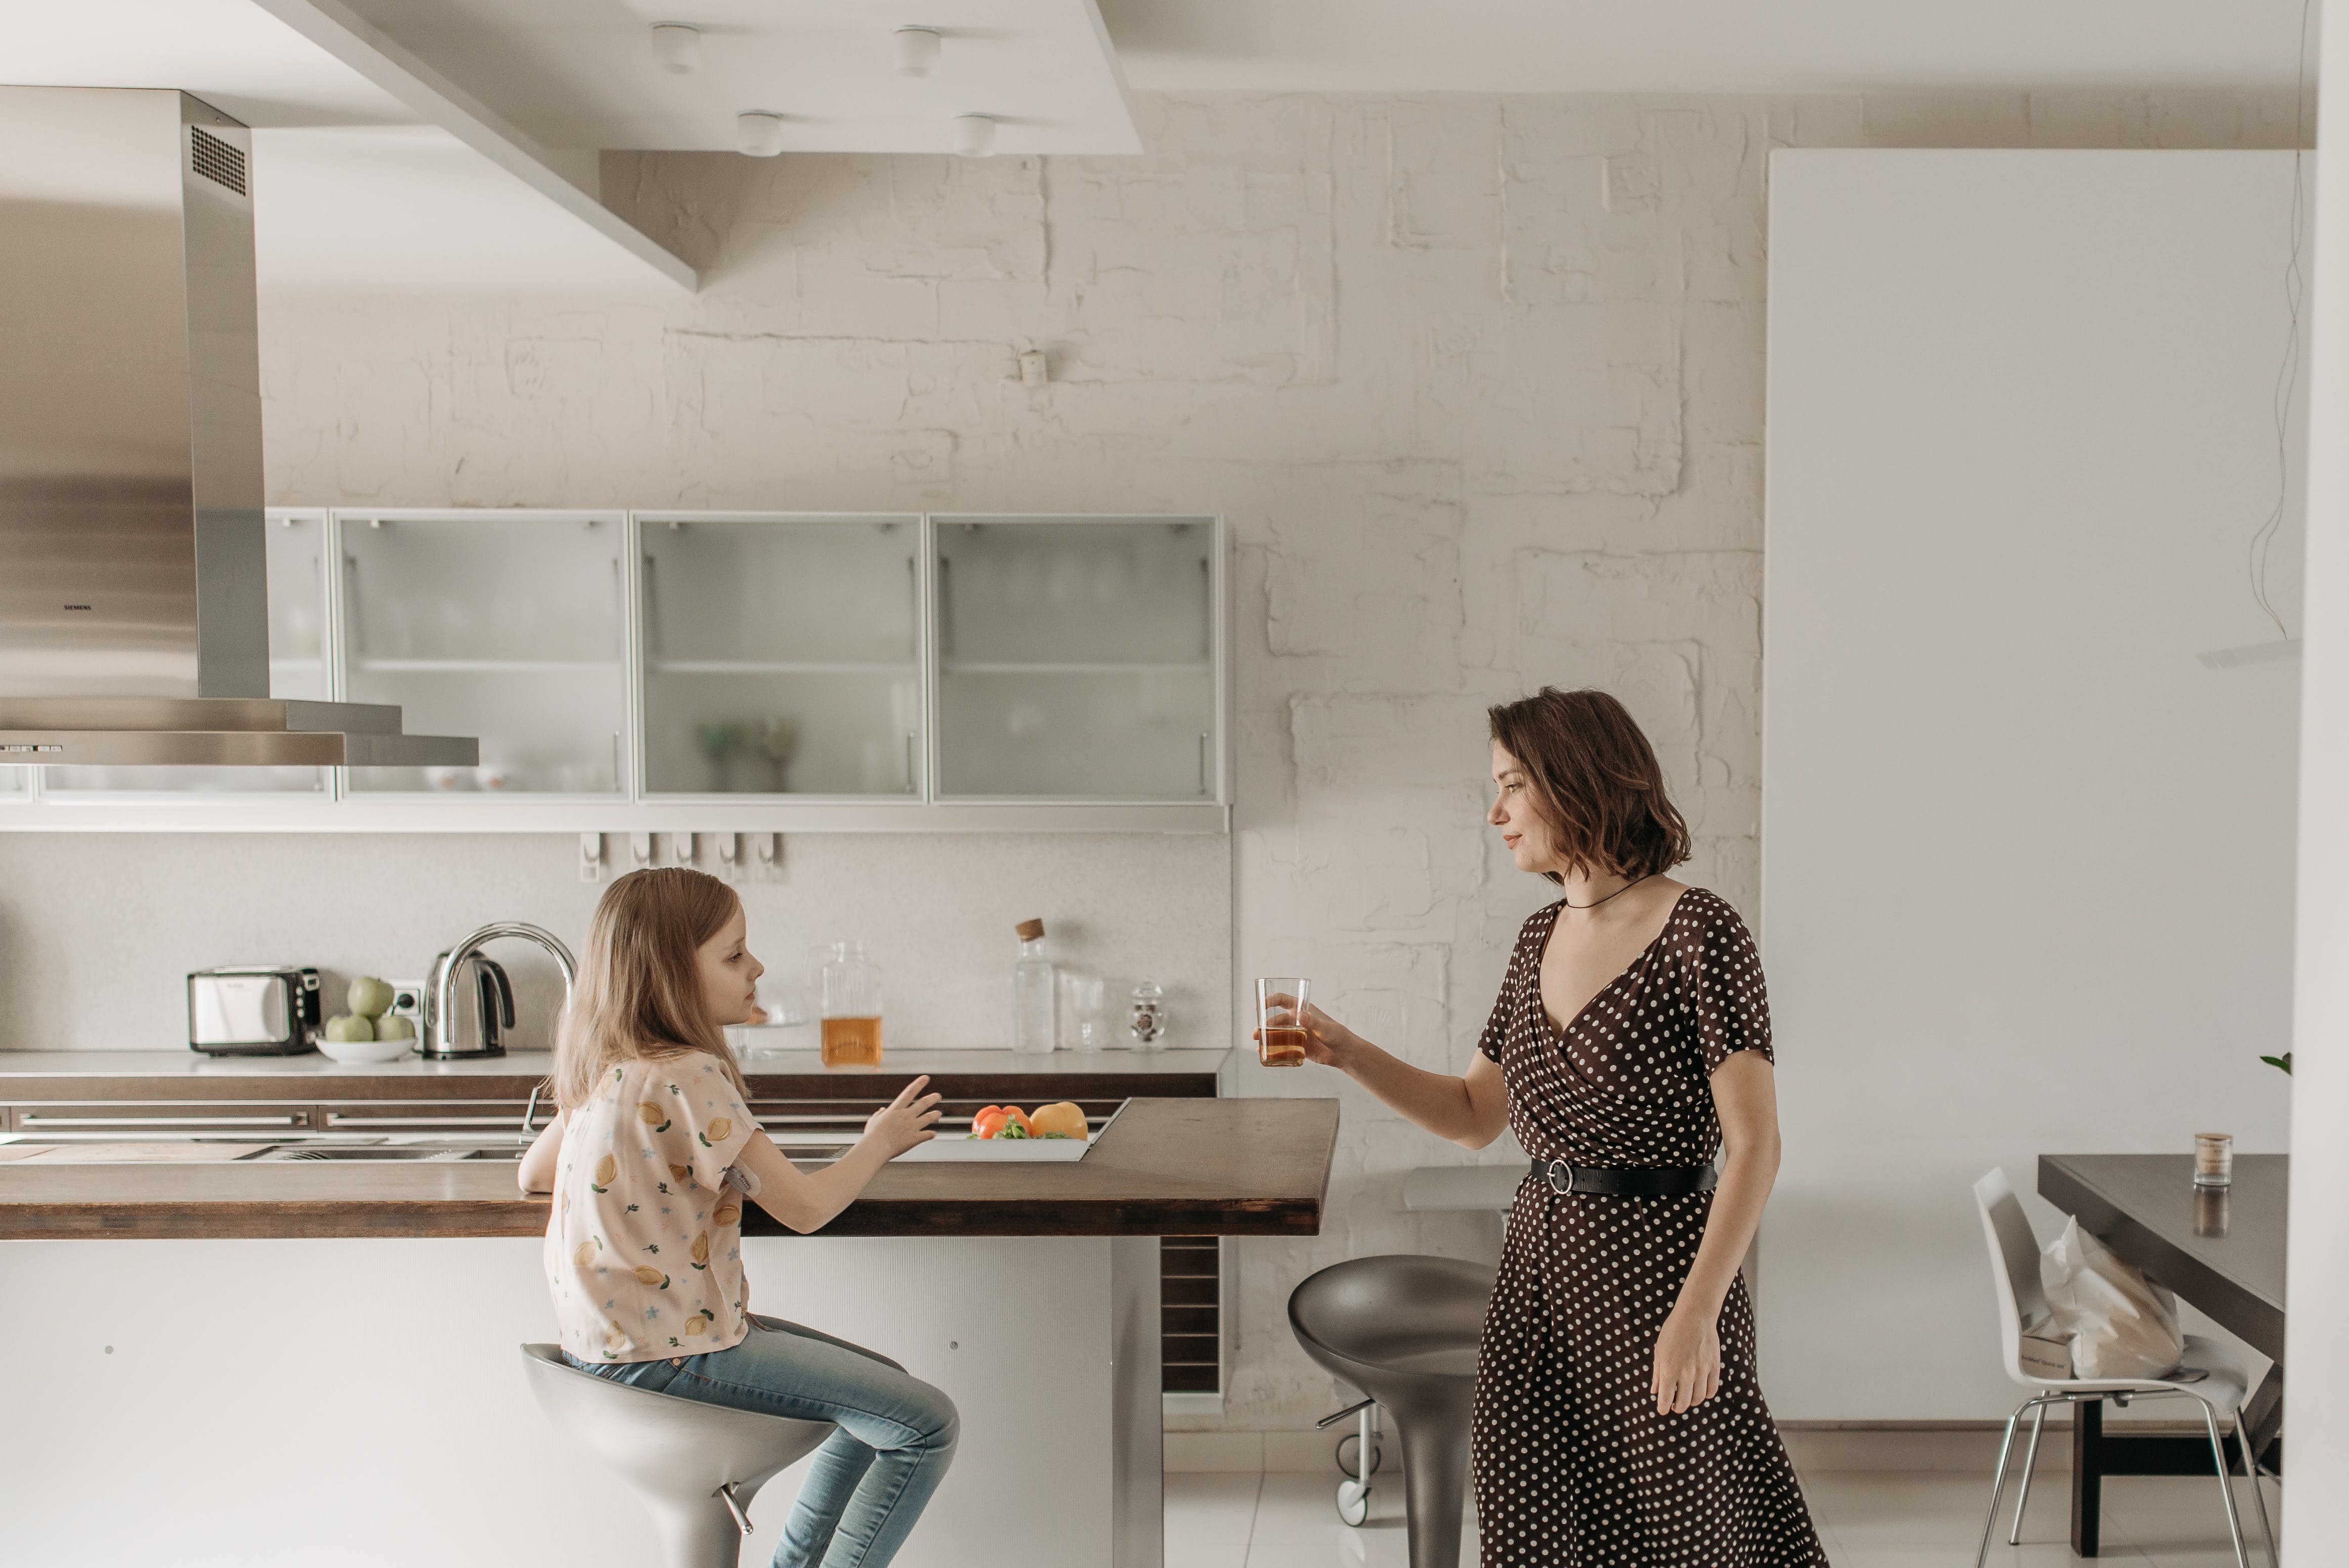 Mutter und Tochter in einer modernen Küche | Quelle: Pexels